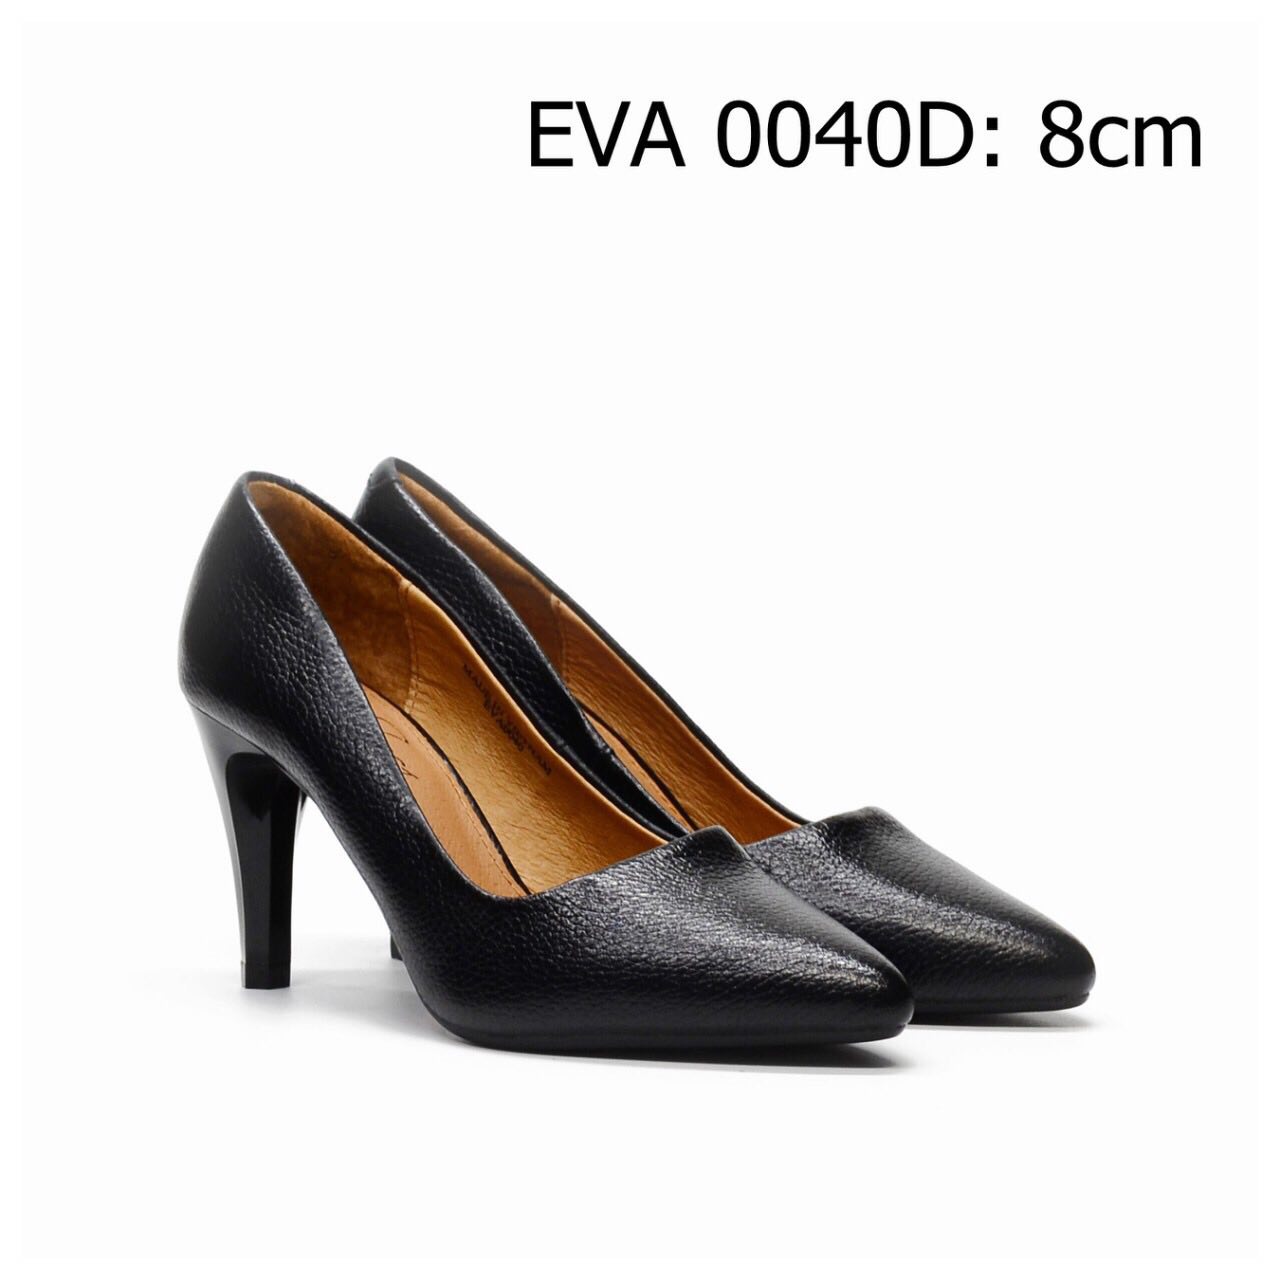 Giày cao gót da bò EVA0040D tạo nét đẹp duyên dáng và quý phái